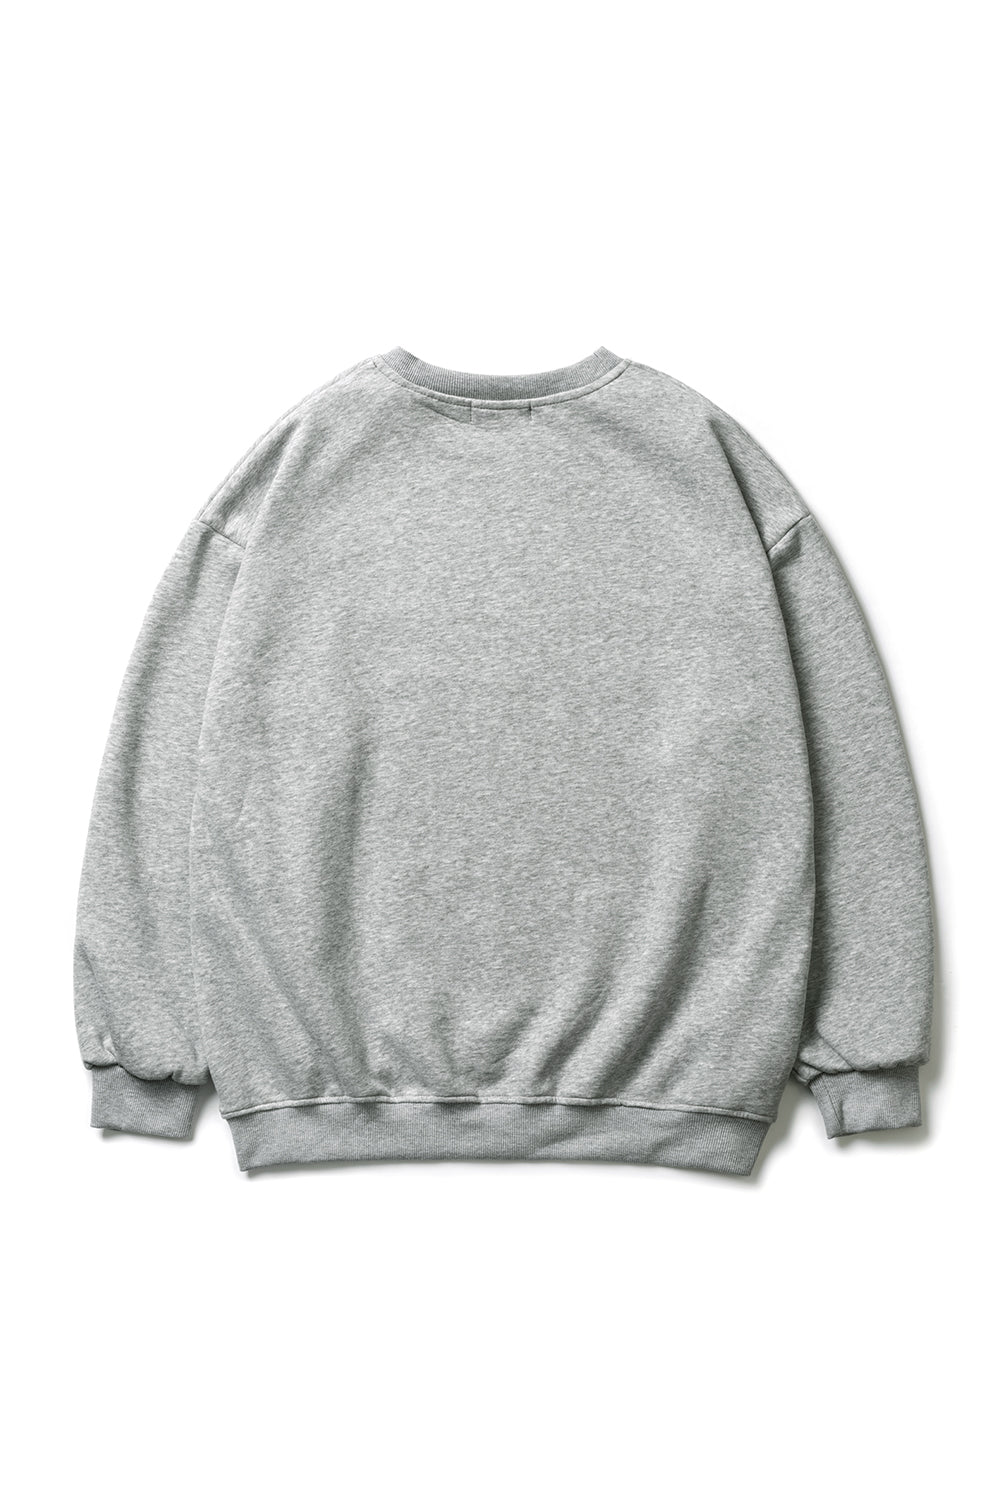 overfit sweatshirt (オーバーフィット ダンボールニットパーカー)